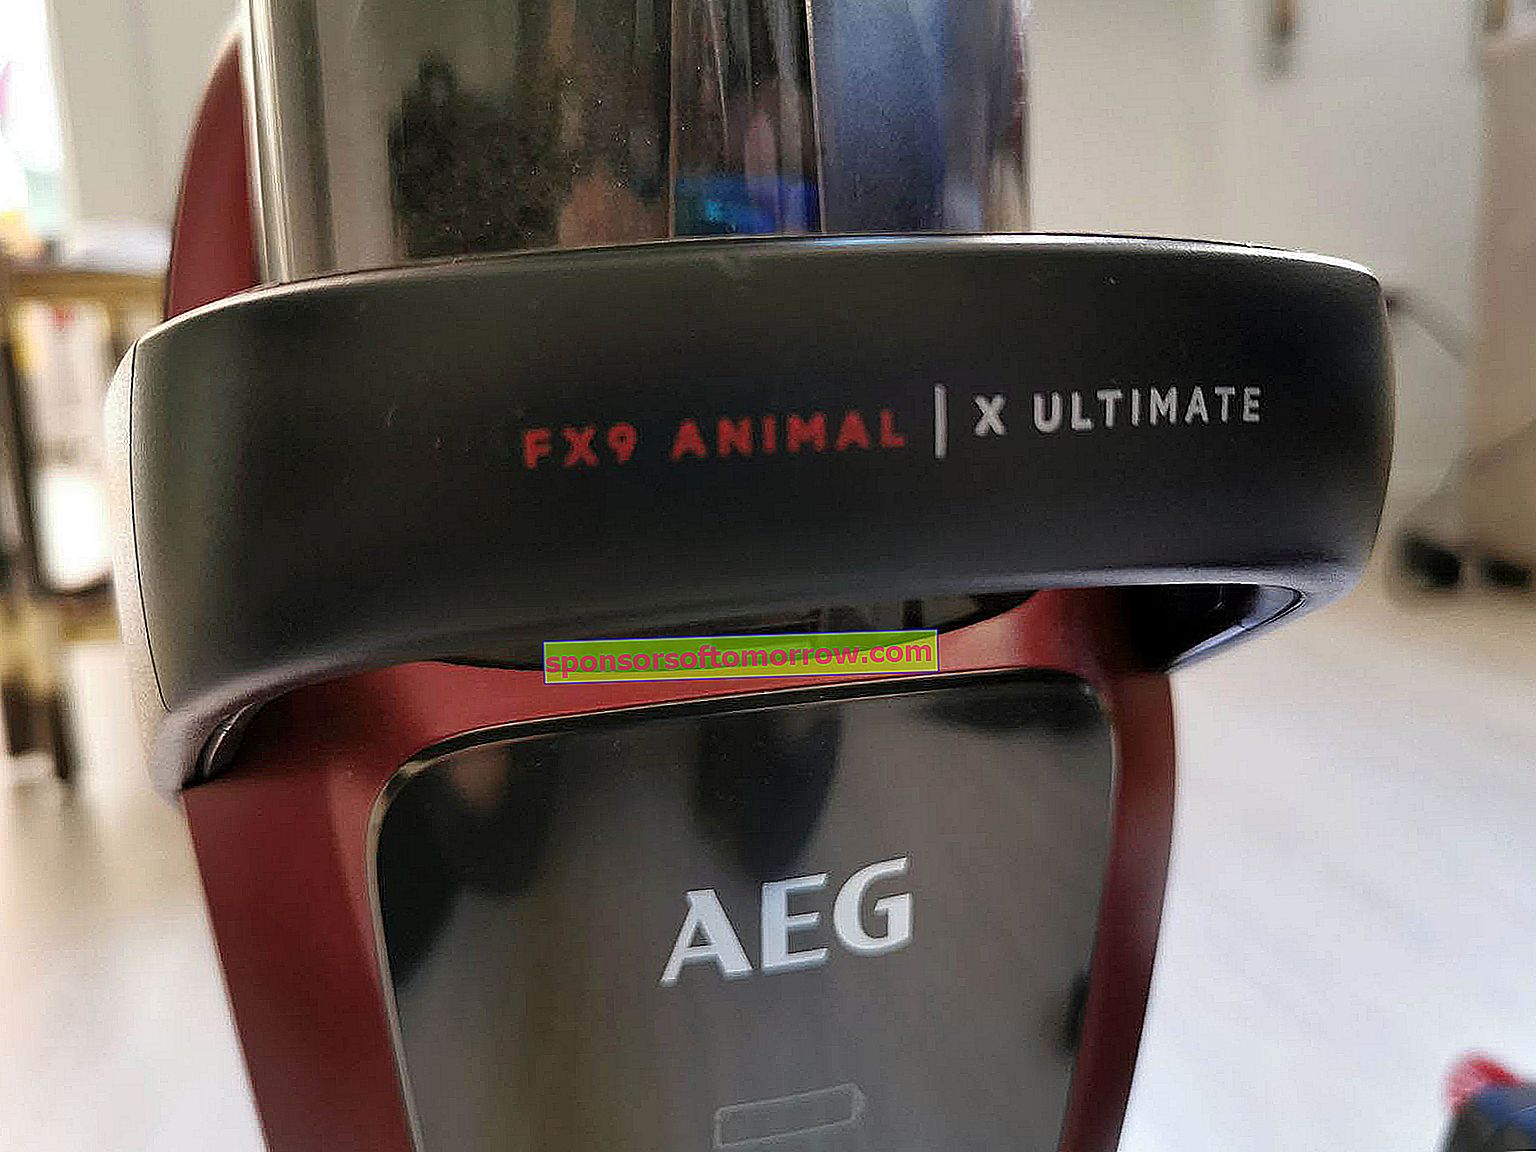 Détail du logo AEG FX9